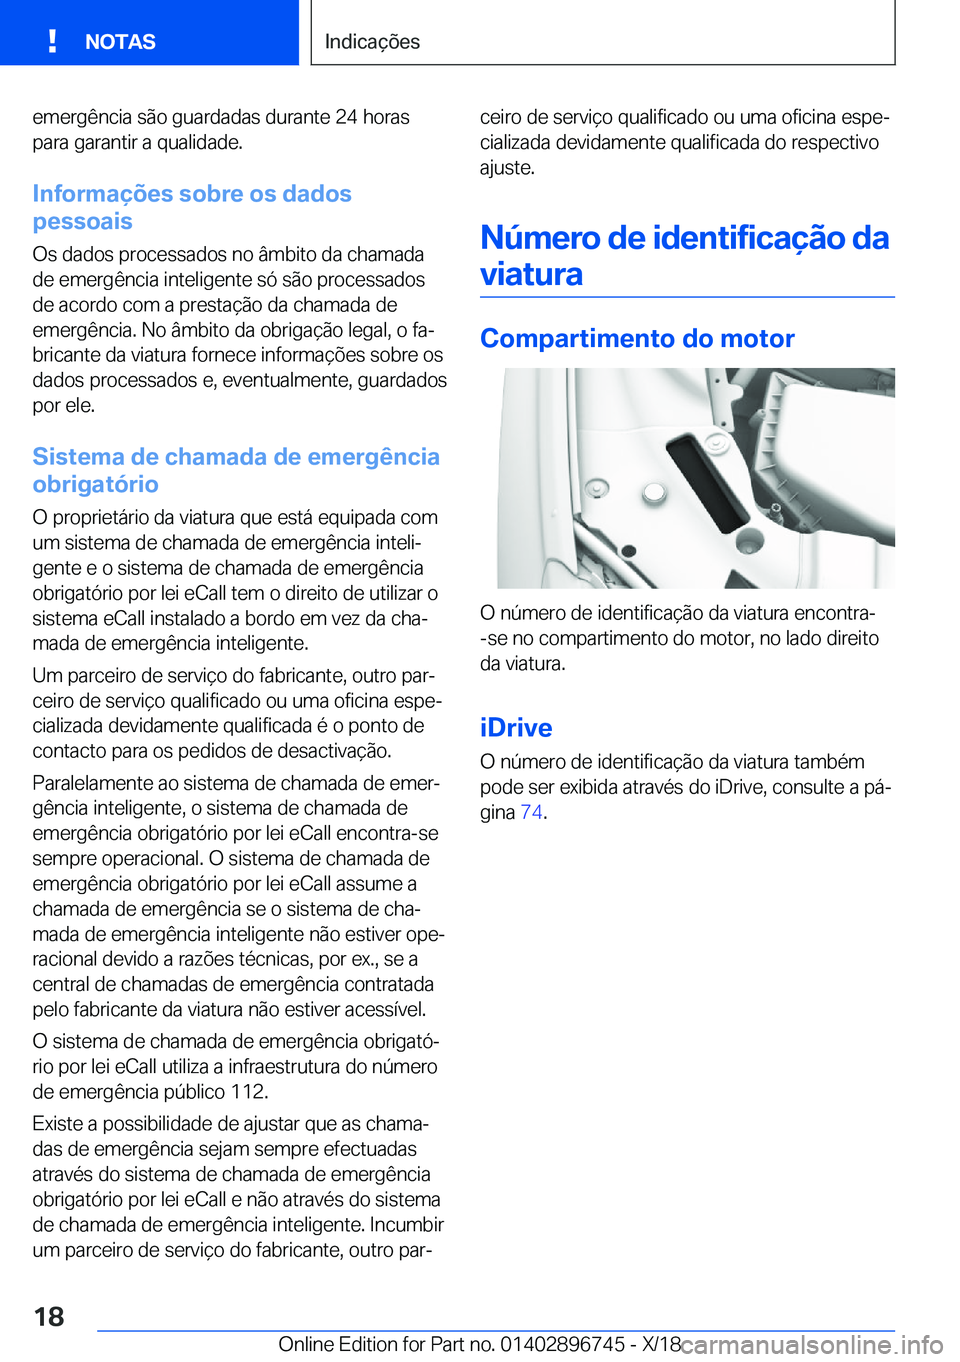 BMW X5 2019  Manual do condutor (in Portuguese) �e�m�e�r�g�ê�n�c�i�a��s�ã�o��g�u�a�r�d�a�d�a�s��d�u�r�a�n�t�e��2�4��h�o�r�a�s�p�a�r�a��g�a�r�a�n�t�i�r��a��q�u�a�l�i�d�a�d�e�.
�I�n�f�o�r�m�a�